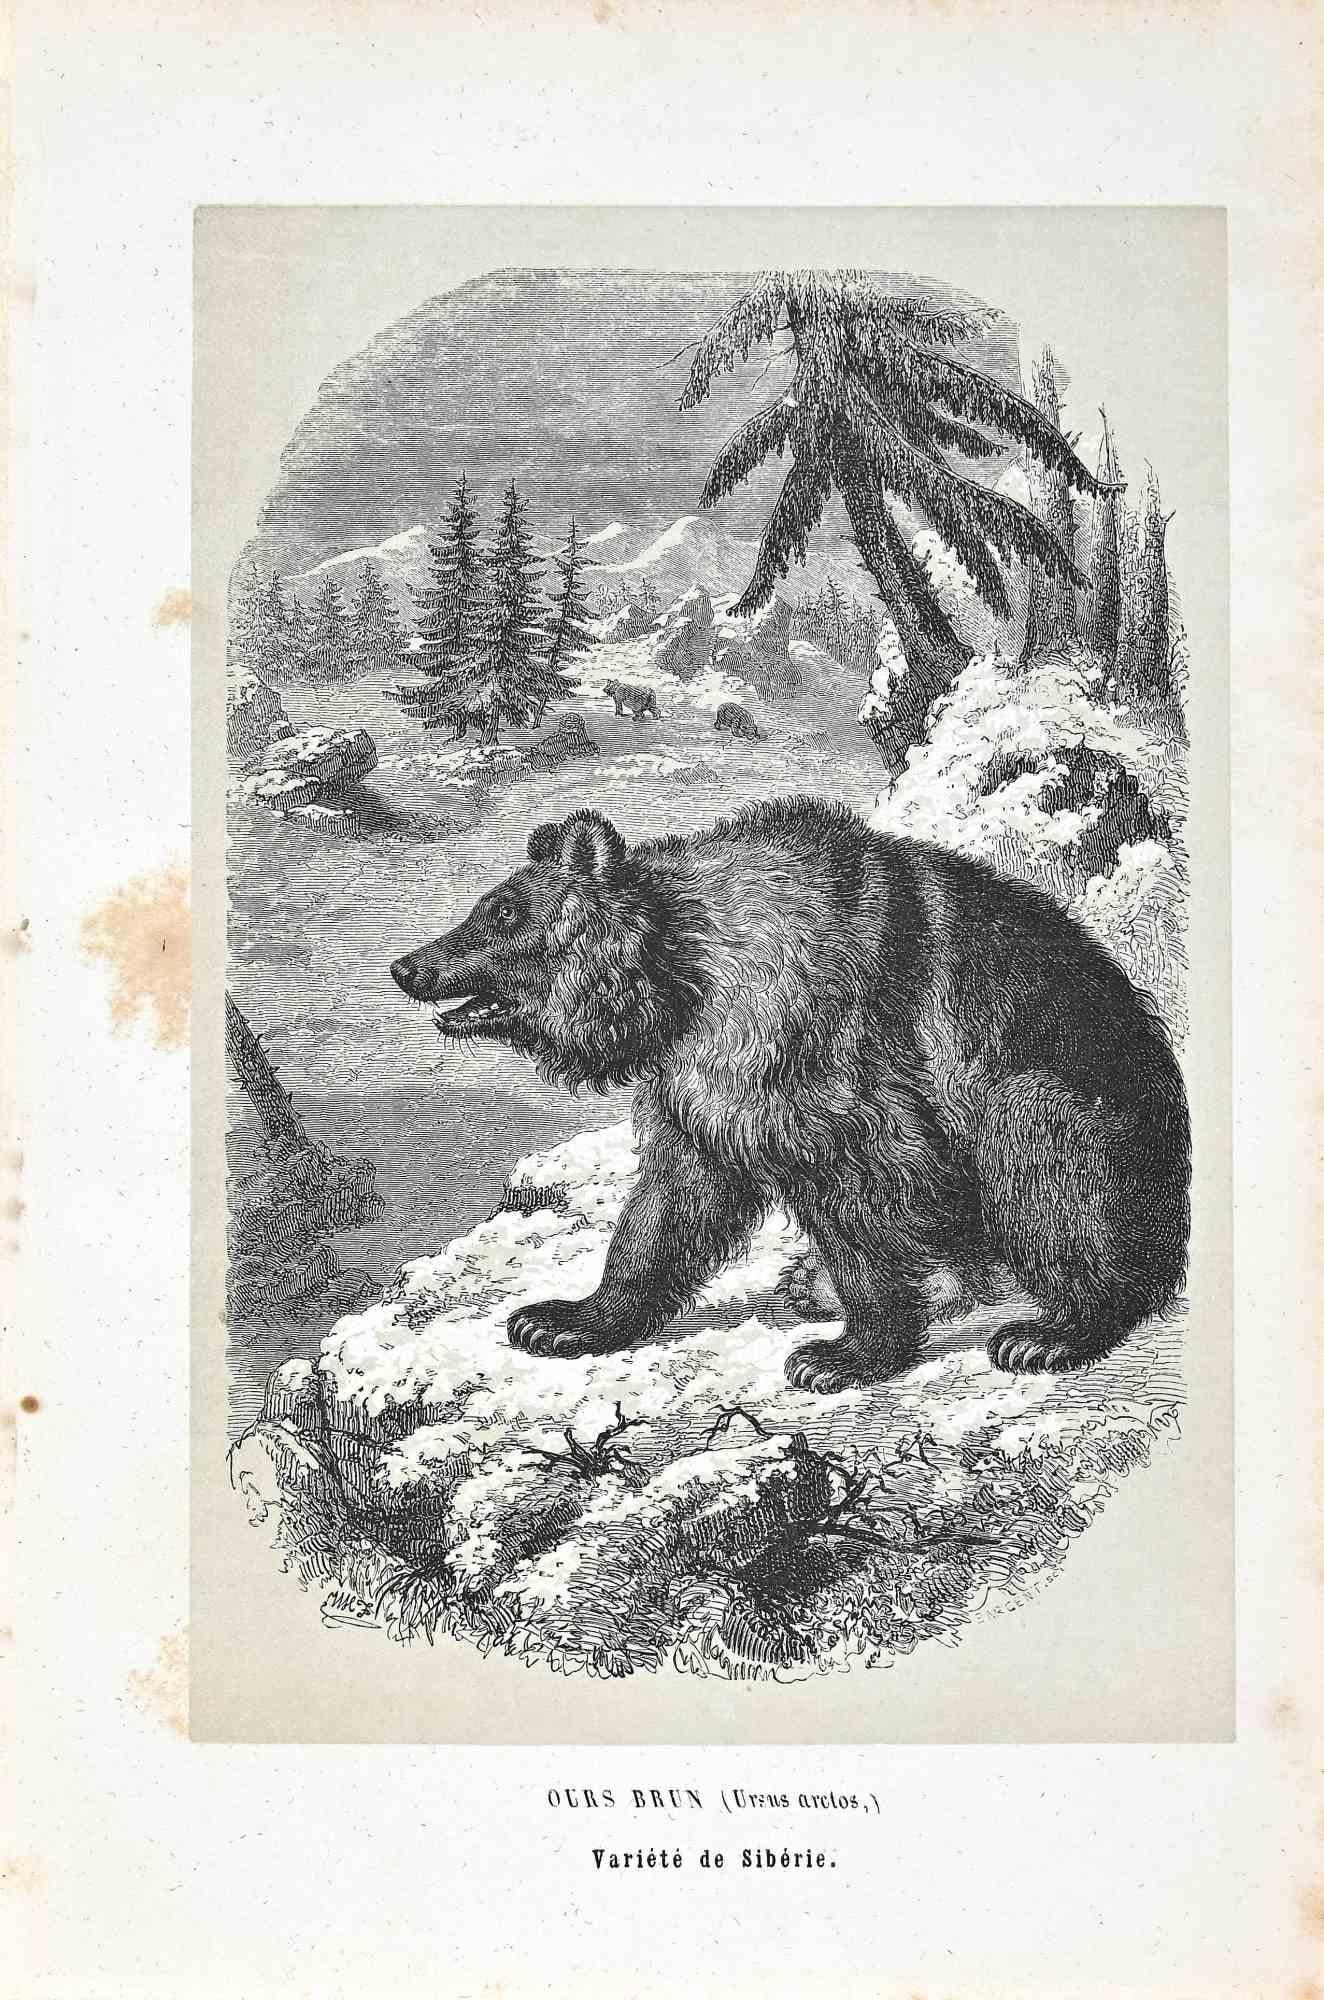 Sibirischer Bär ist eine Originallithografie auf elfenbeinfarbenem Papier, die von Paul Gervais (1816-1879) geschaffen wurde. Das Kunstwerk stammt aus der Serie "Les Trois Règnes de la Nature" und wurde 1854 veröffentlicht.

Guter Zustand bis auf